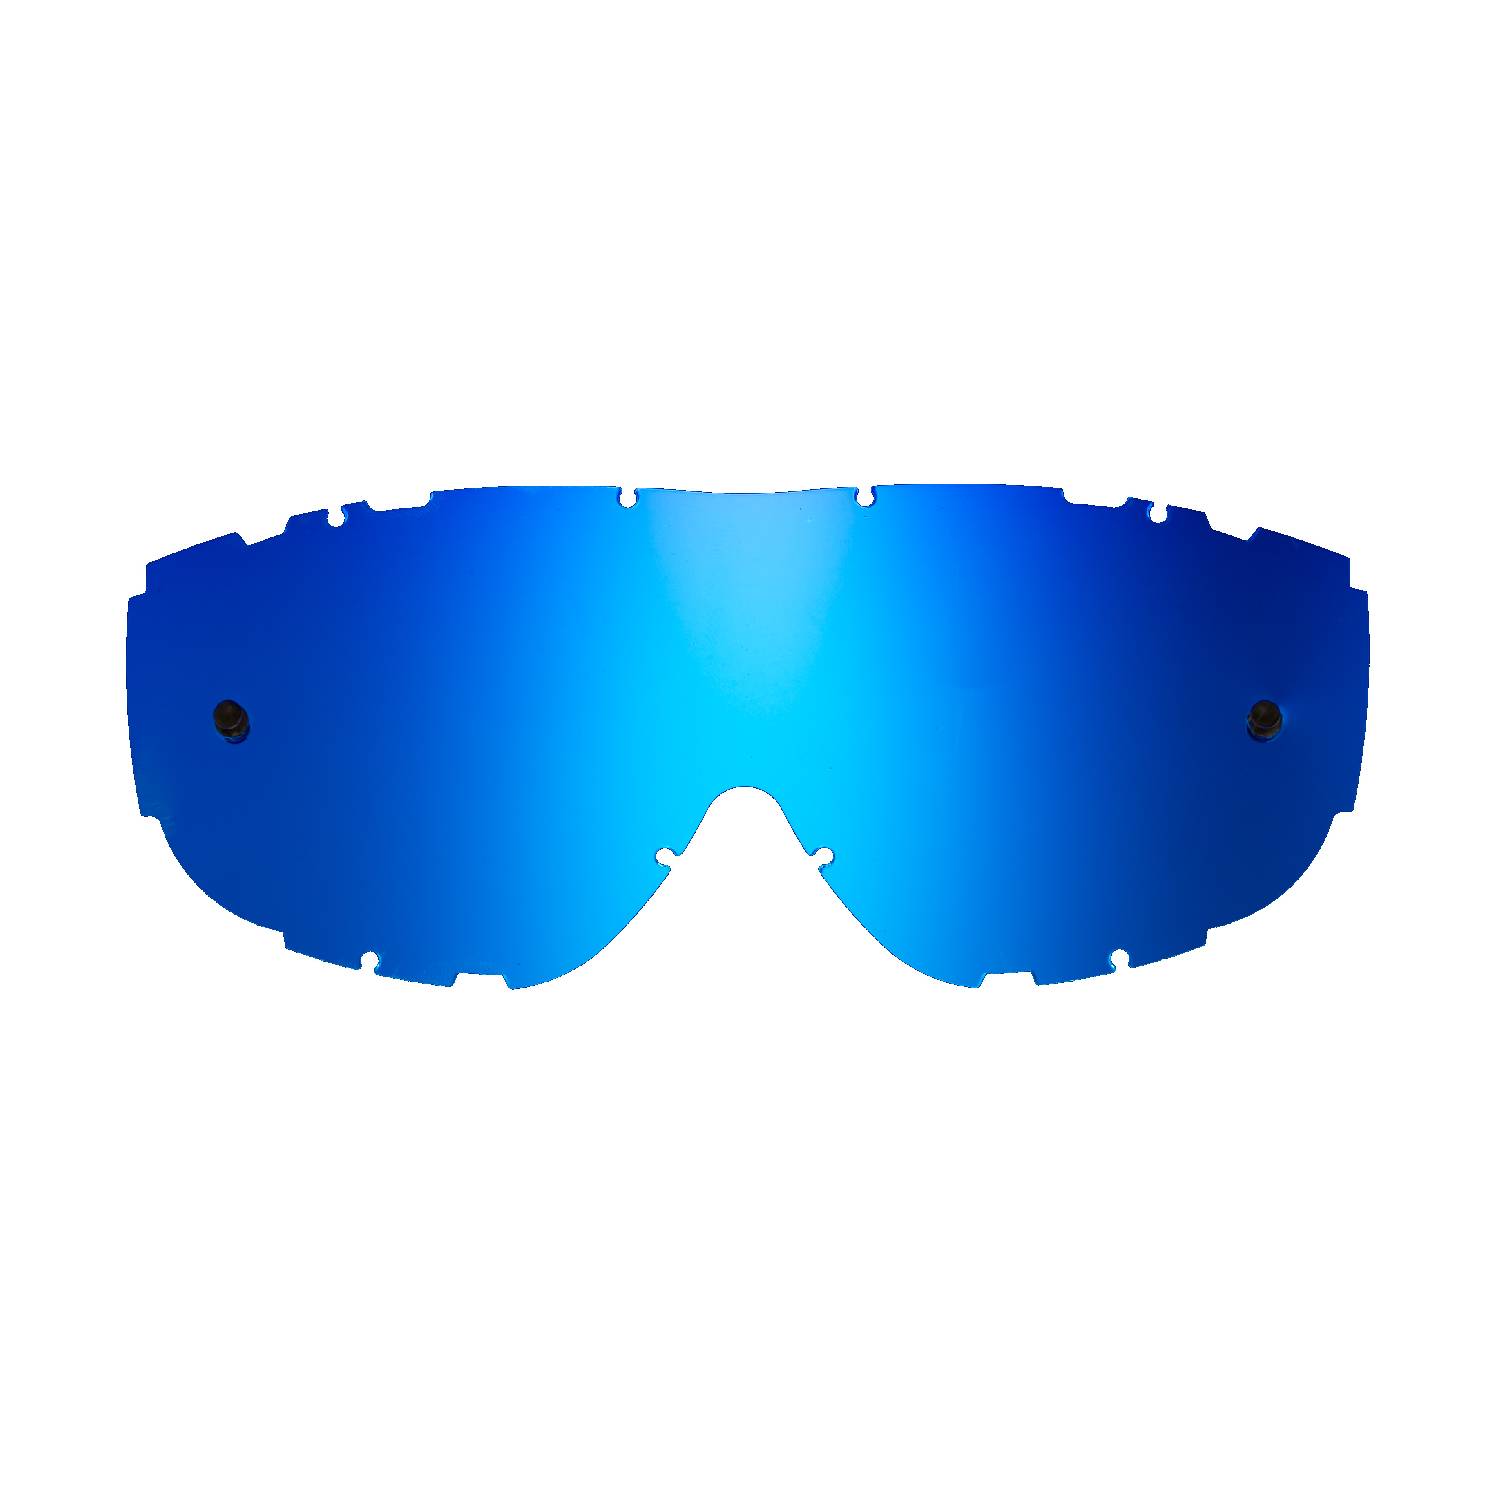 Lente di ricambio blu specchiato compatibile per occhiale/maschera Smith Piston